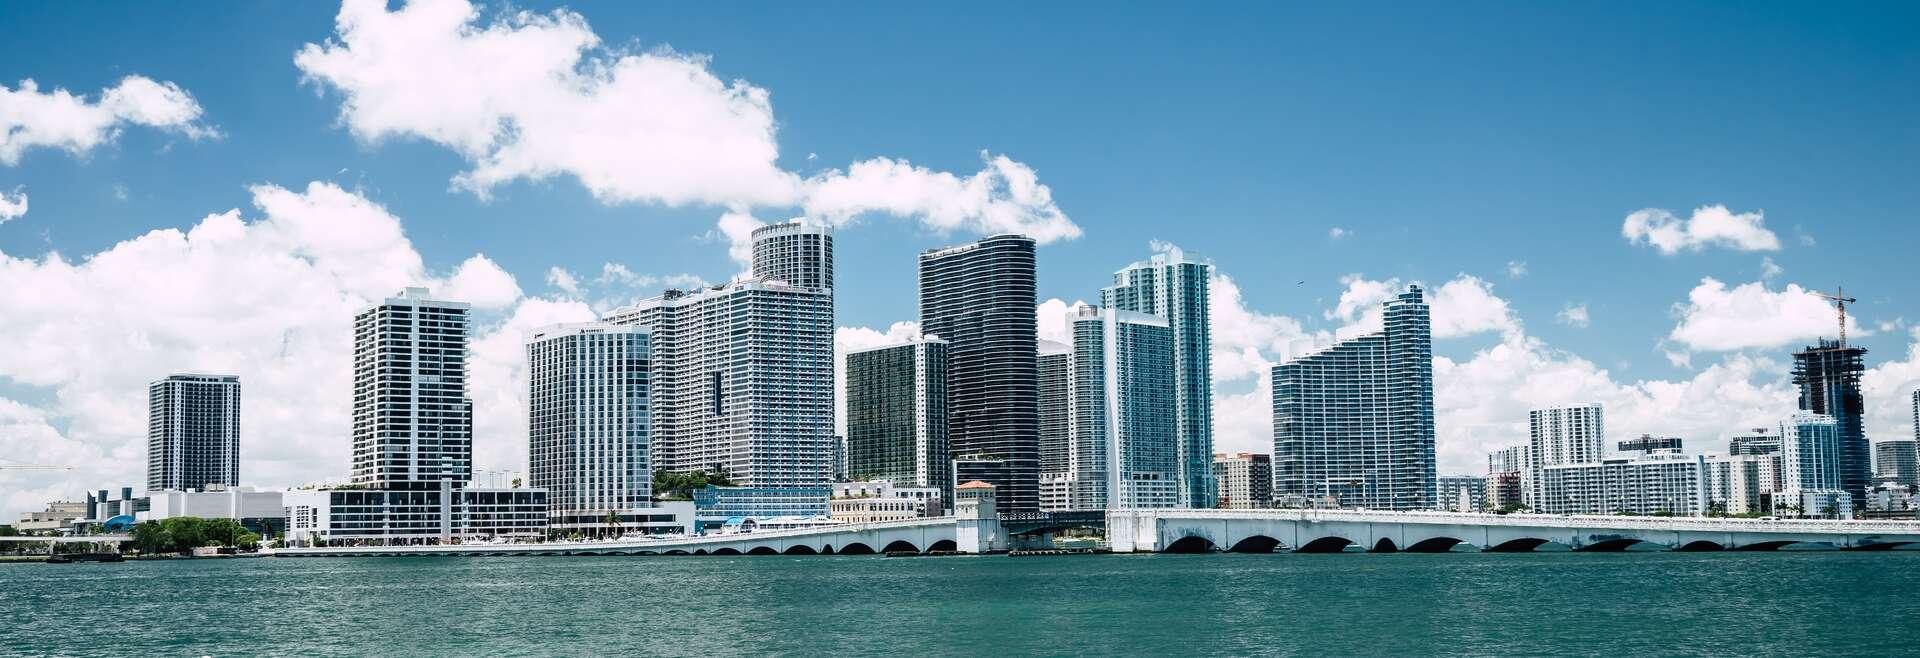 Séjour linguistique États-Unis, Miami, Skyline